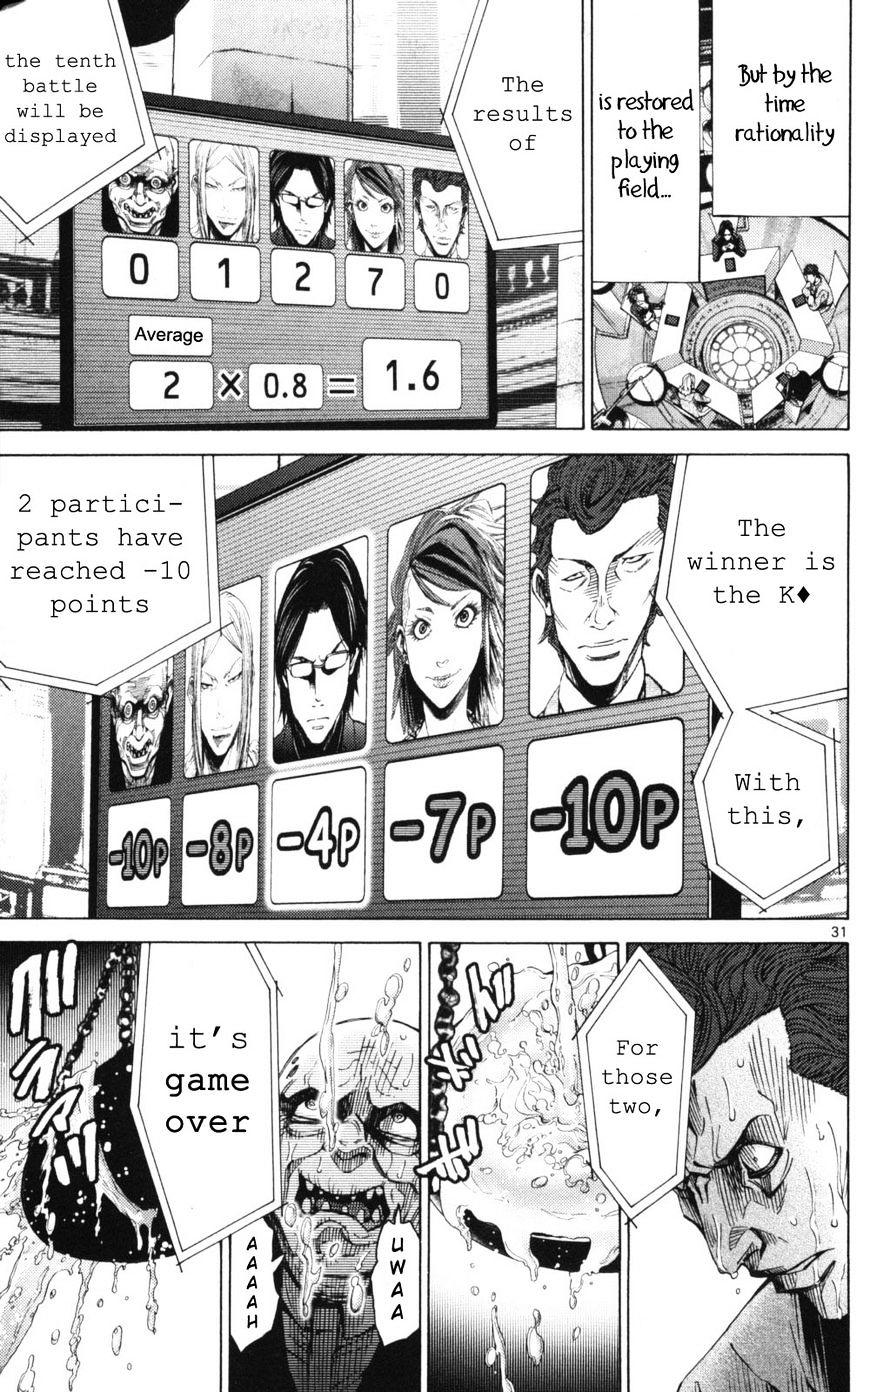 Imawa No Kuni No Alice Chapter 51.2 : Side Story 6 - King Of Diamonds (2) page 31 - Mangakakalot